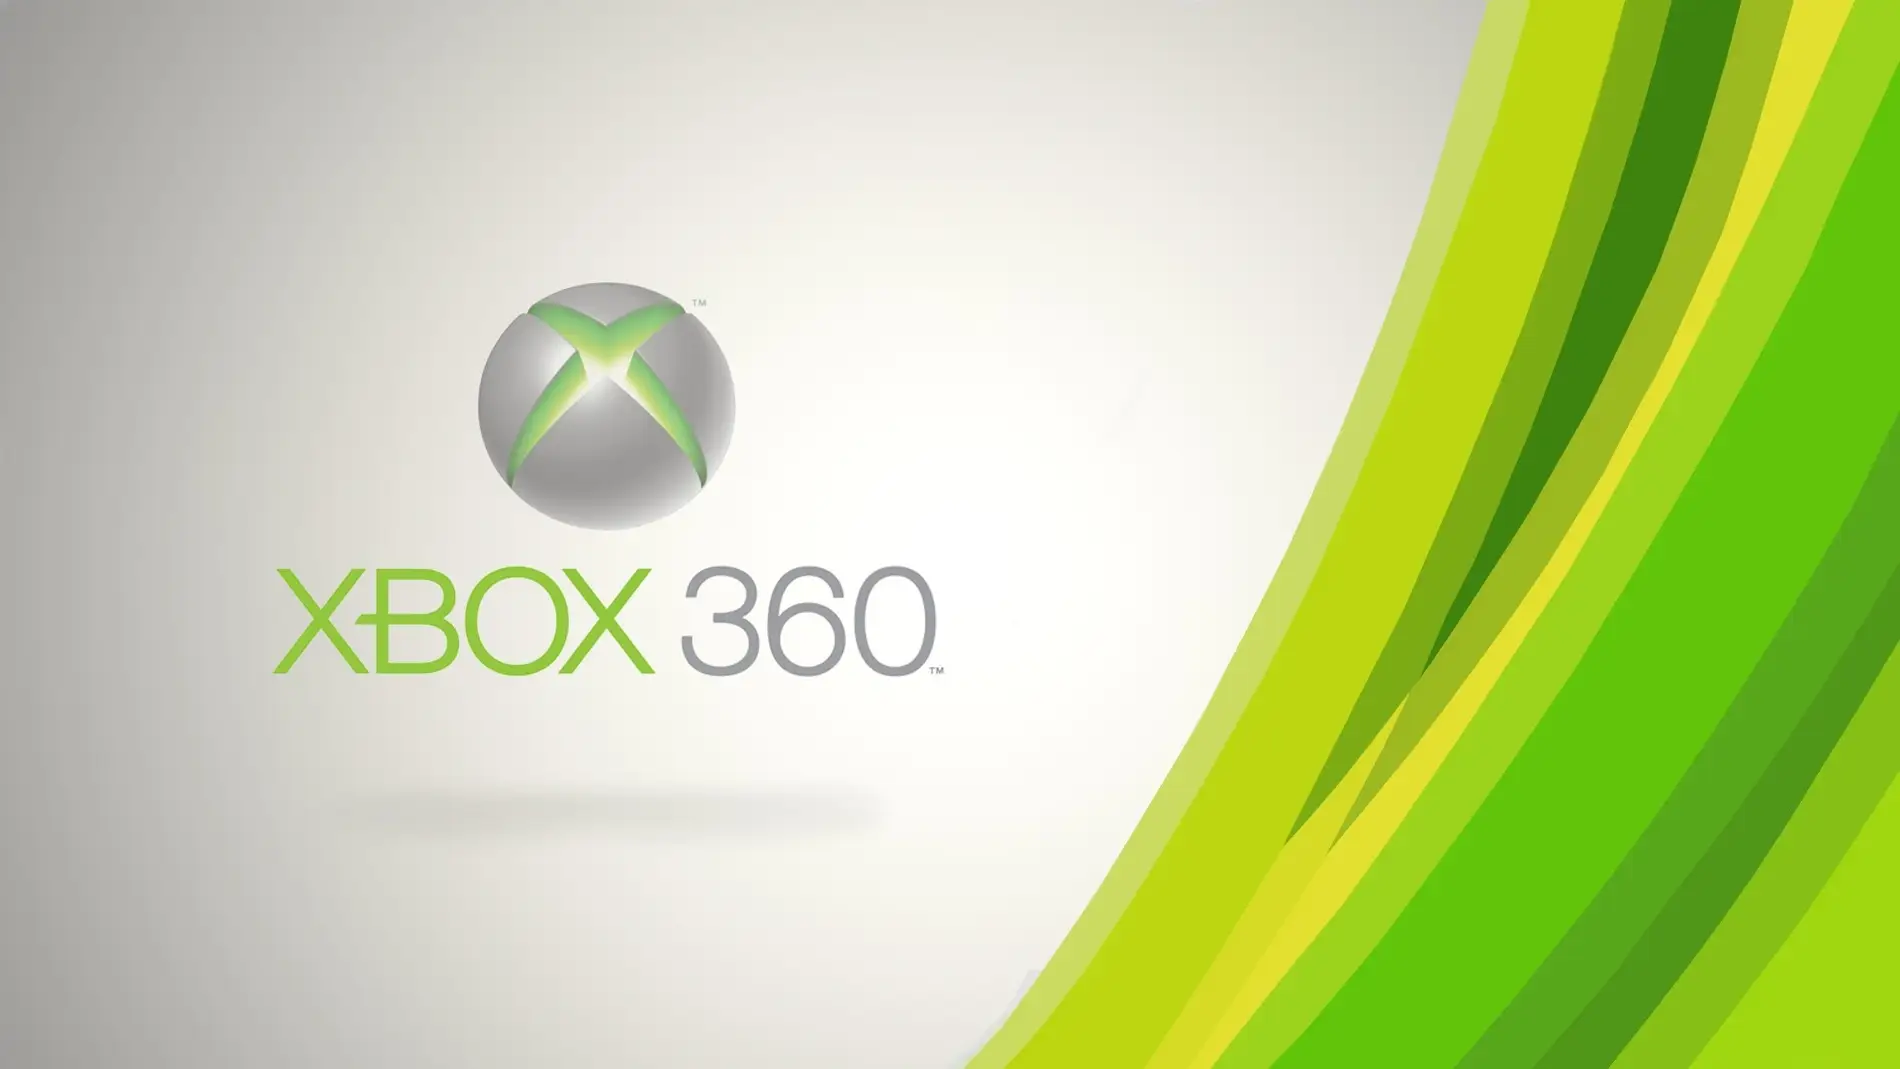 Horno Jarra imagen Los juegos gratis de Xbox 360 ya pueden descargarse en Xbox One